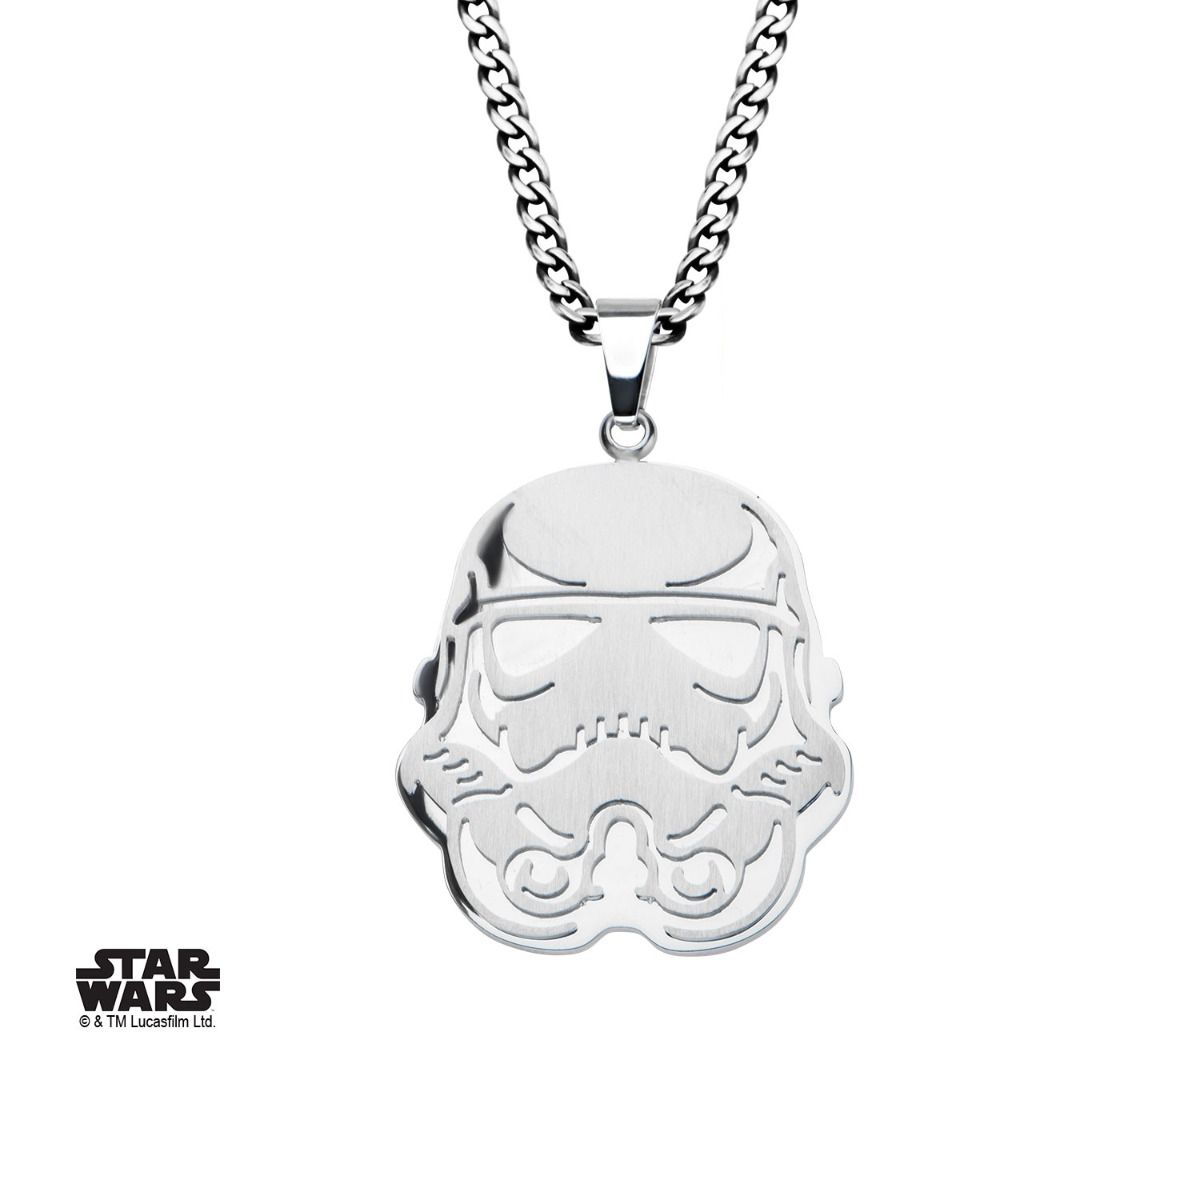 STAR WARS Star Wars Stormtrooper Pendant Necklace -Rebel Bod-RebelBod